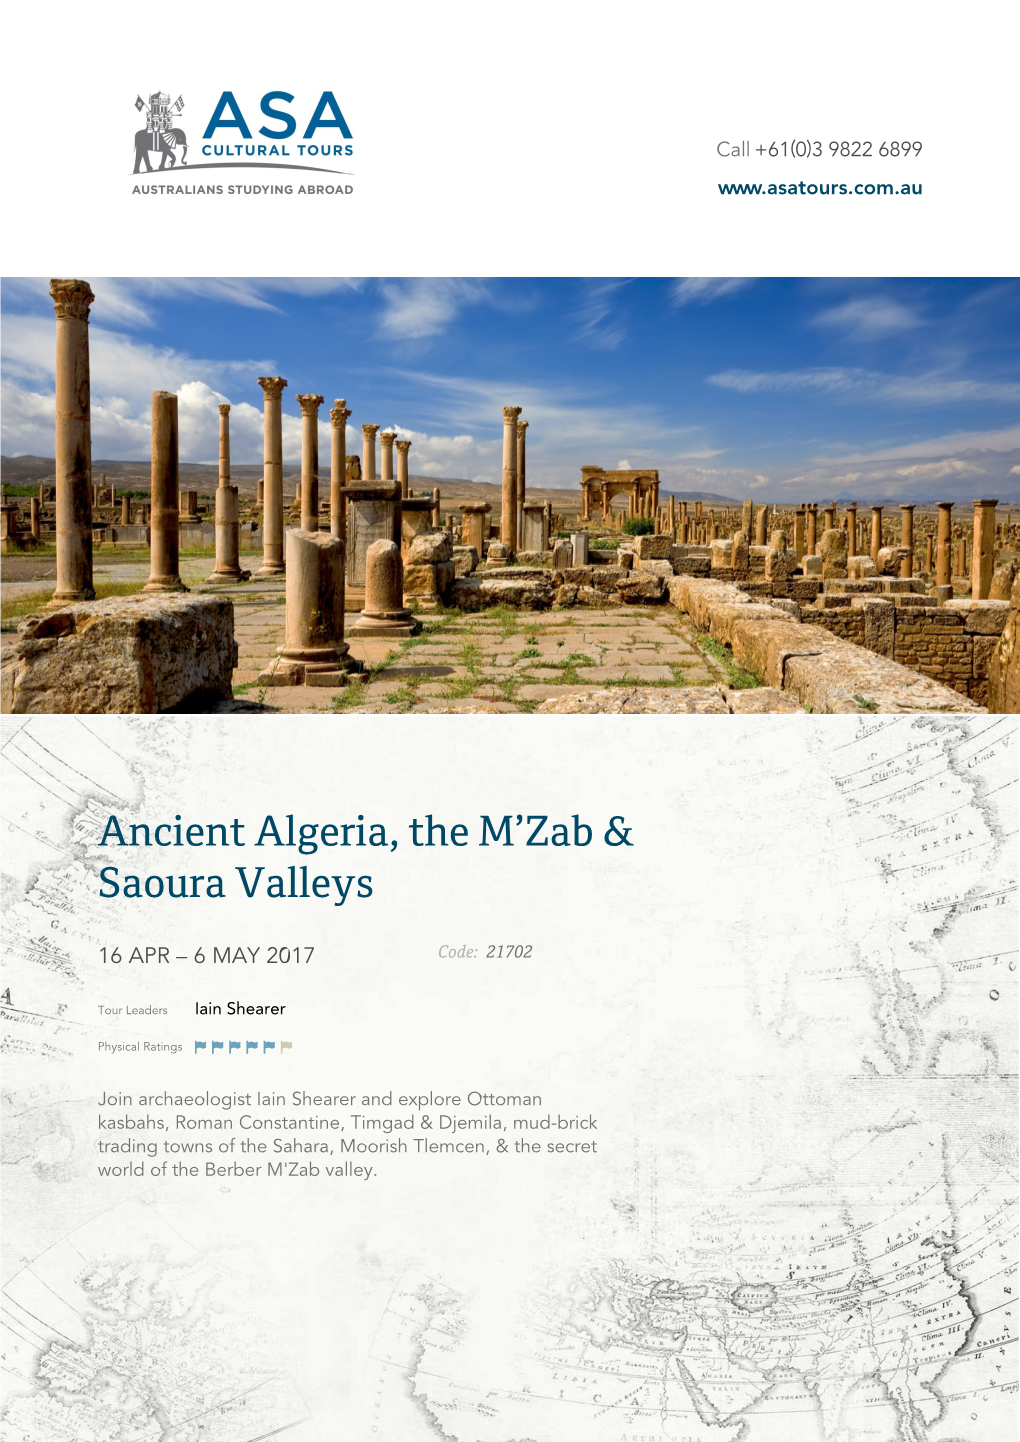 Ancient Algeria, the M'zab & Saoura Valleys